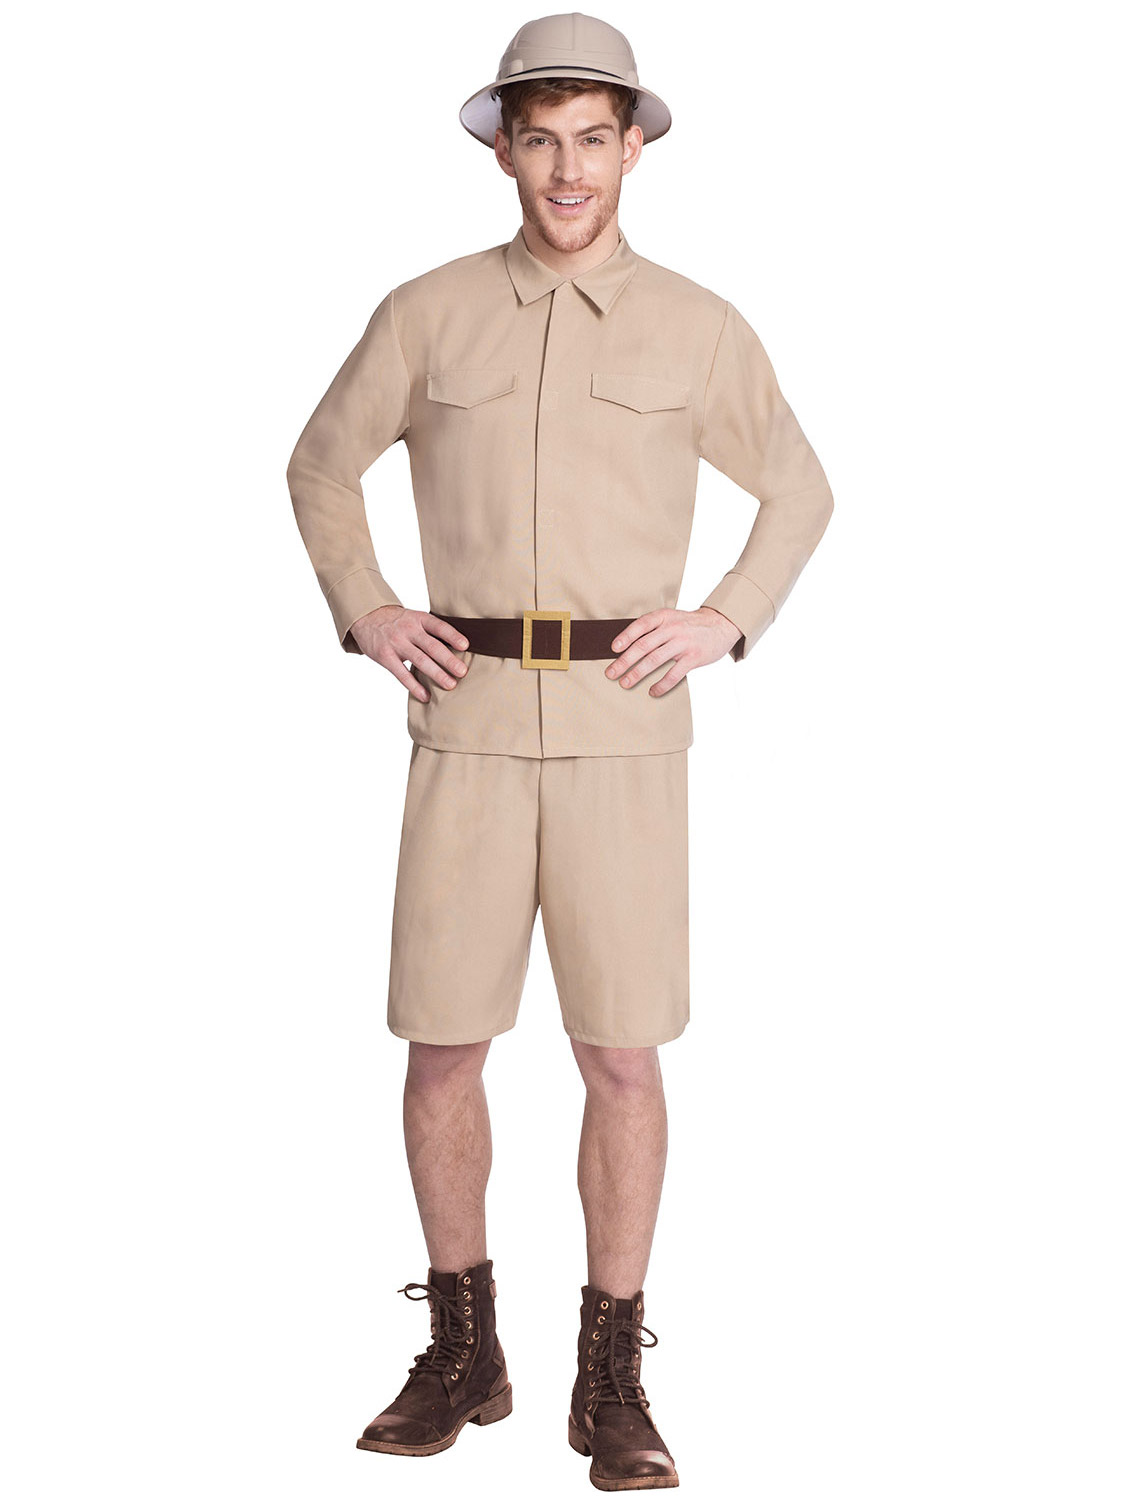 safari zoo keeper costume